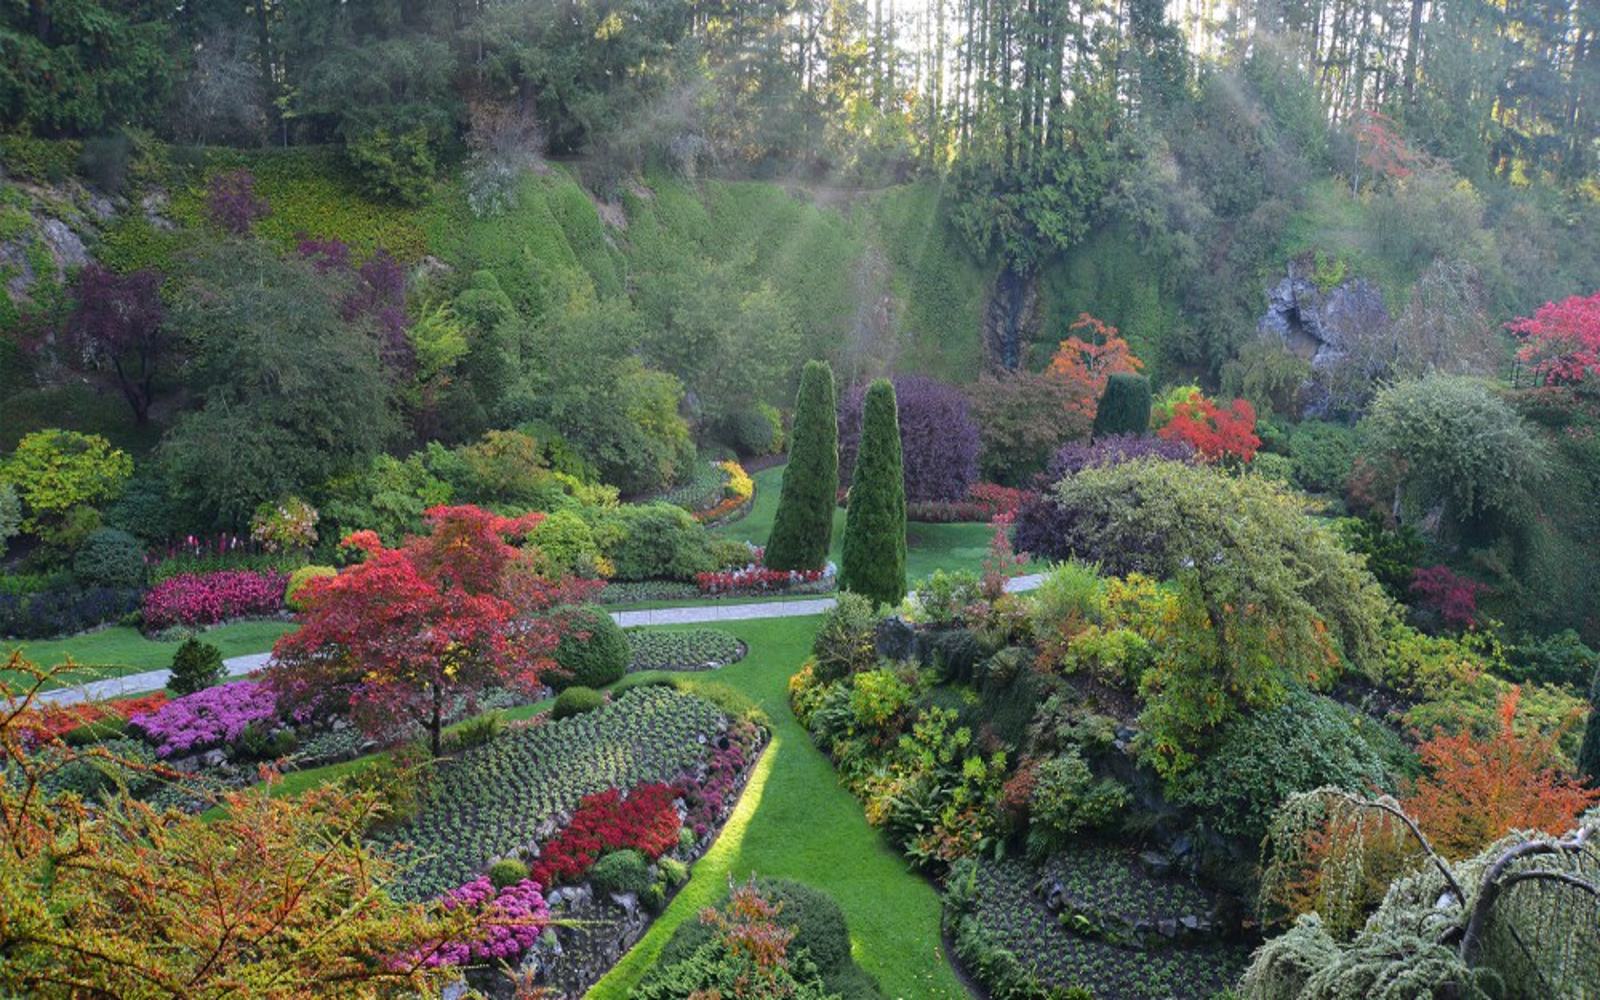 The Sunken Garden, Butchart Gardens Victoria BC